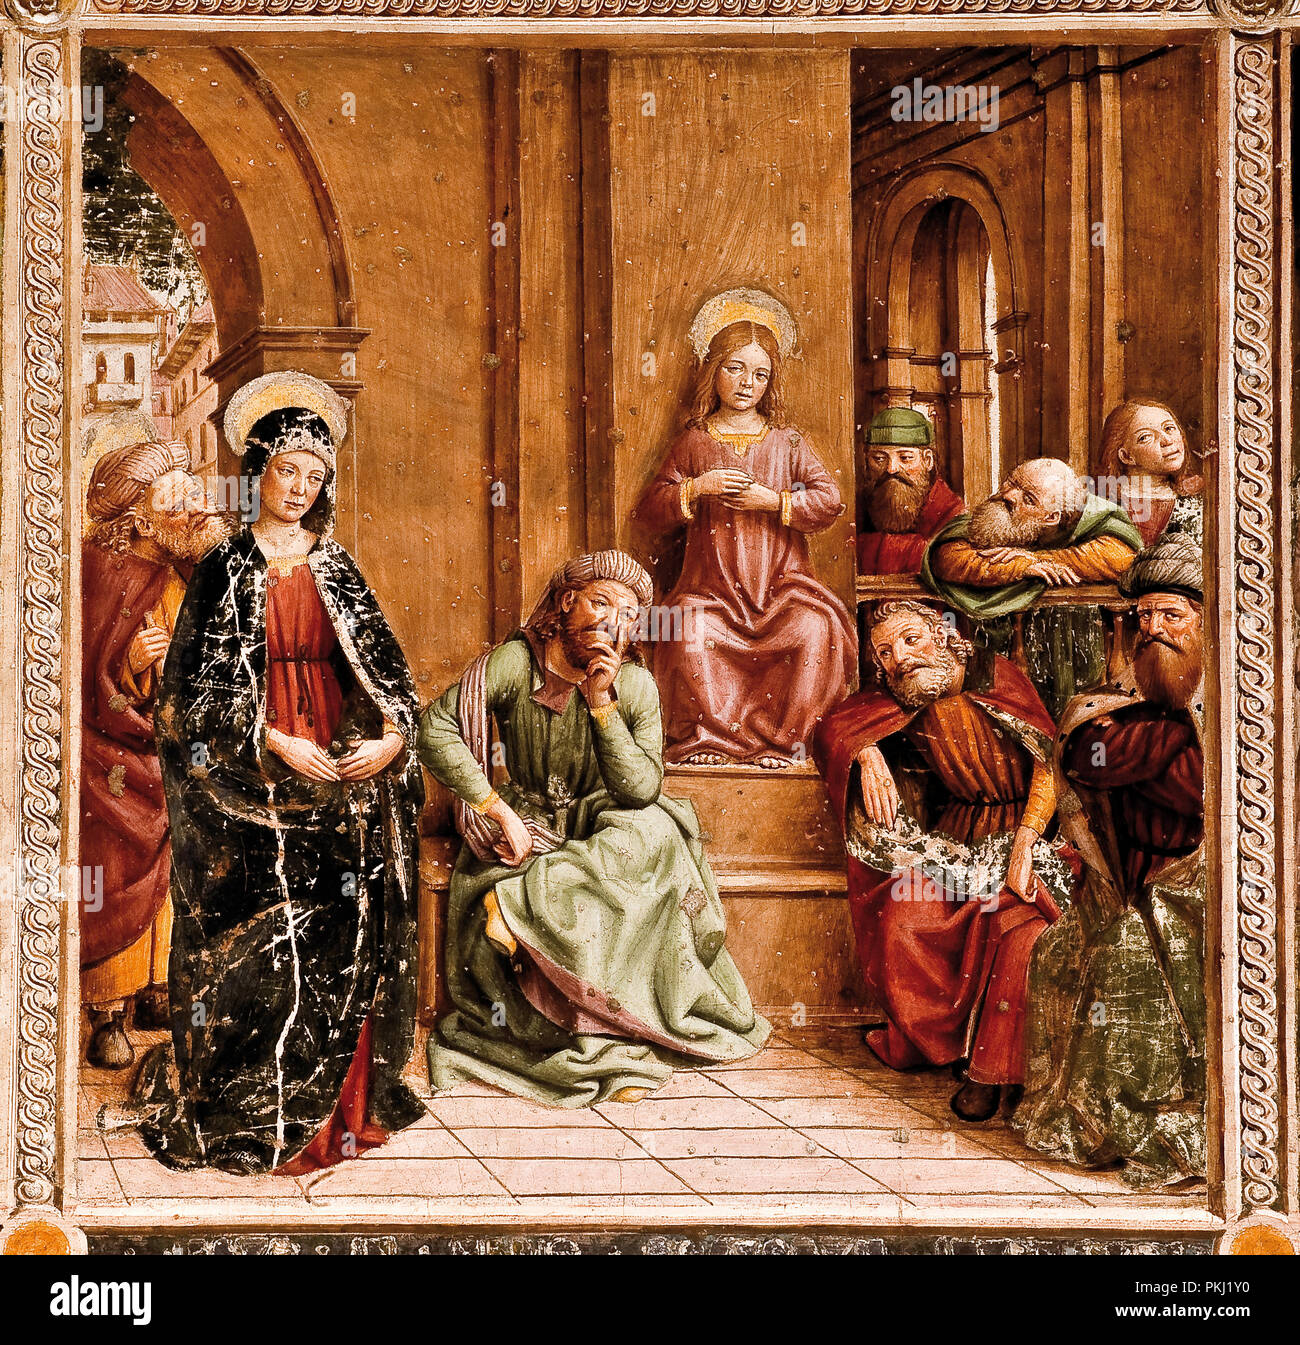 Italien Piemont Ivrea Kirche San Bernardino - Innenraum Fresken - Geschichte des Lebens und der Passion Christi Stockfoto